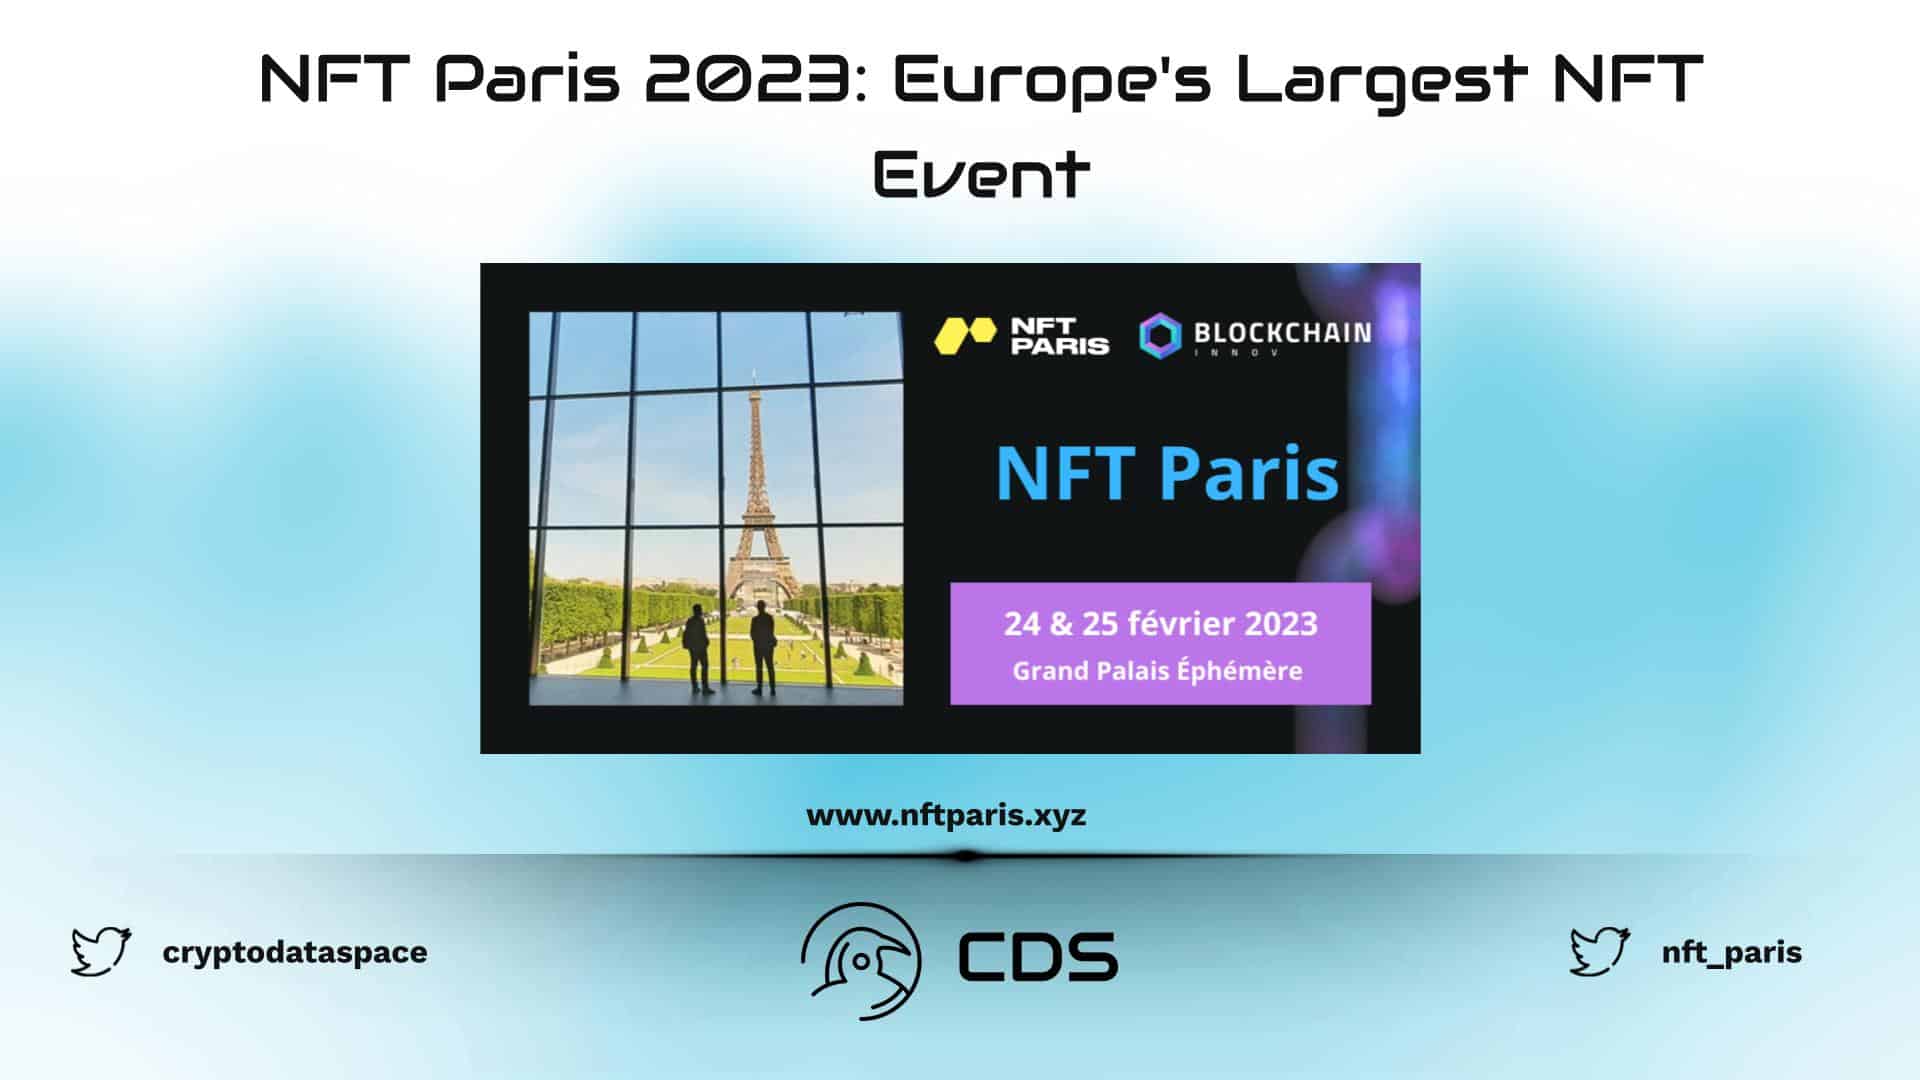 NFT Paris 2023: Europe's Largest NFT Event